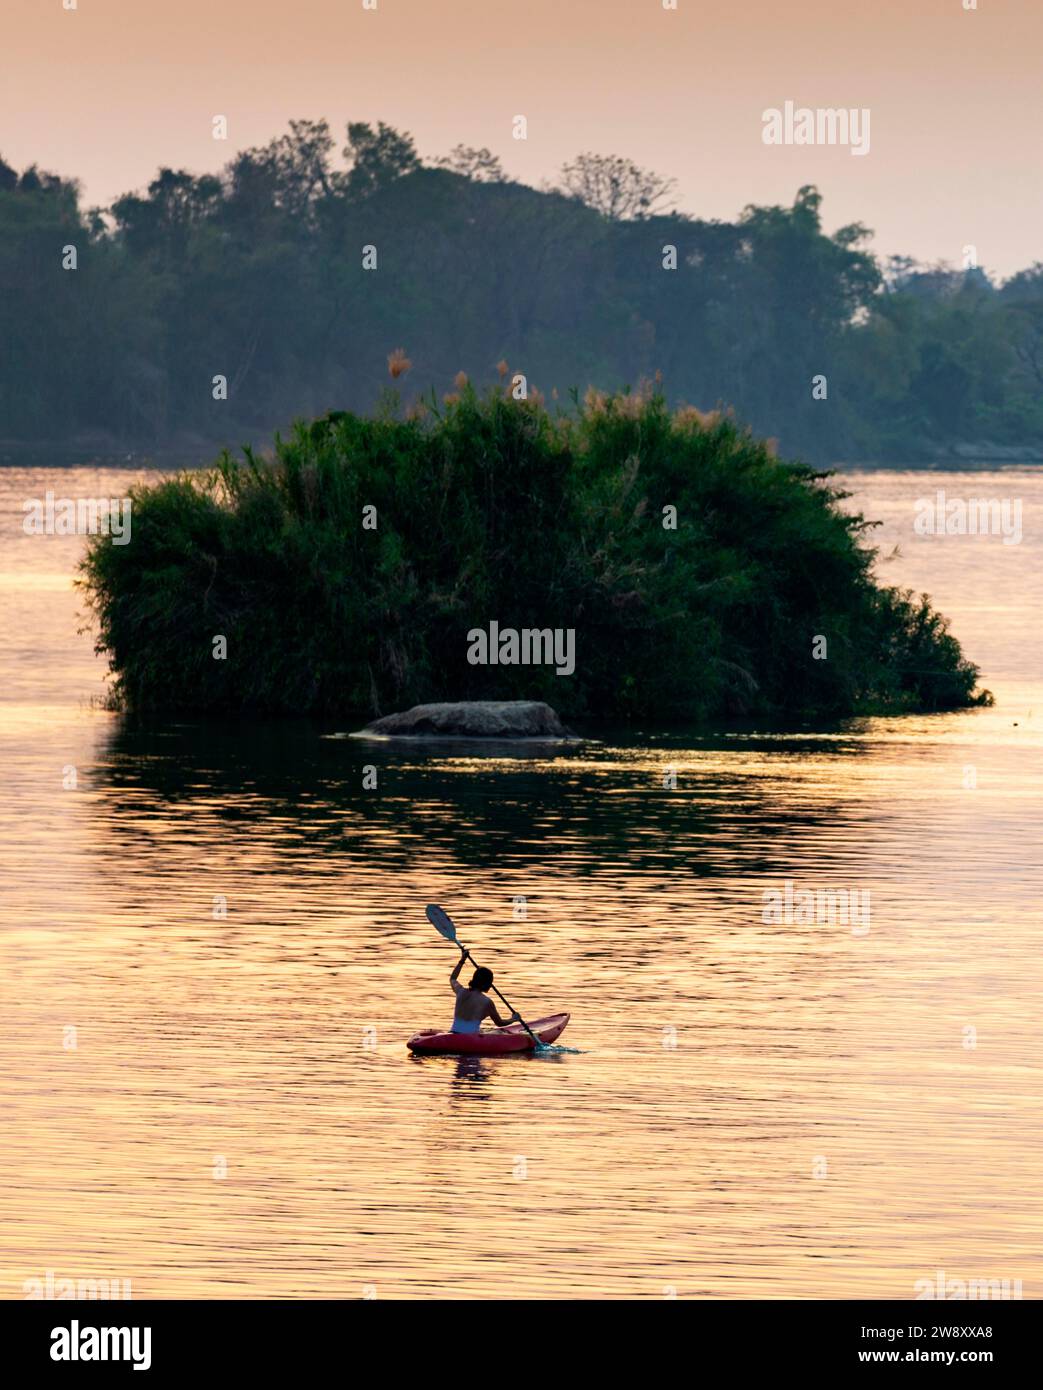 Silhouette di una persona in kayak, pagaiando lungo le calme acque del Mekong, nell'arcipelago si Phan Don, attraverso raggi di luce dorata riflessa Foto Stock